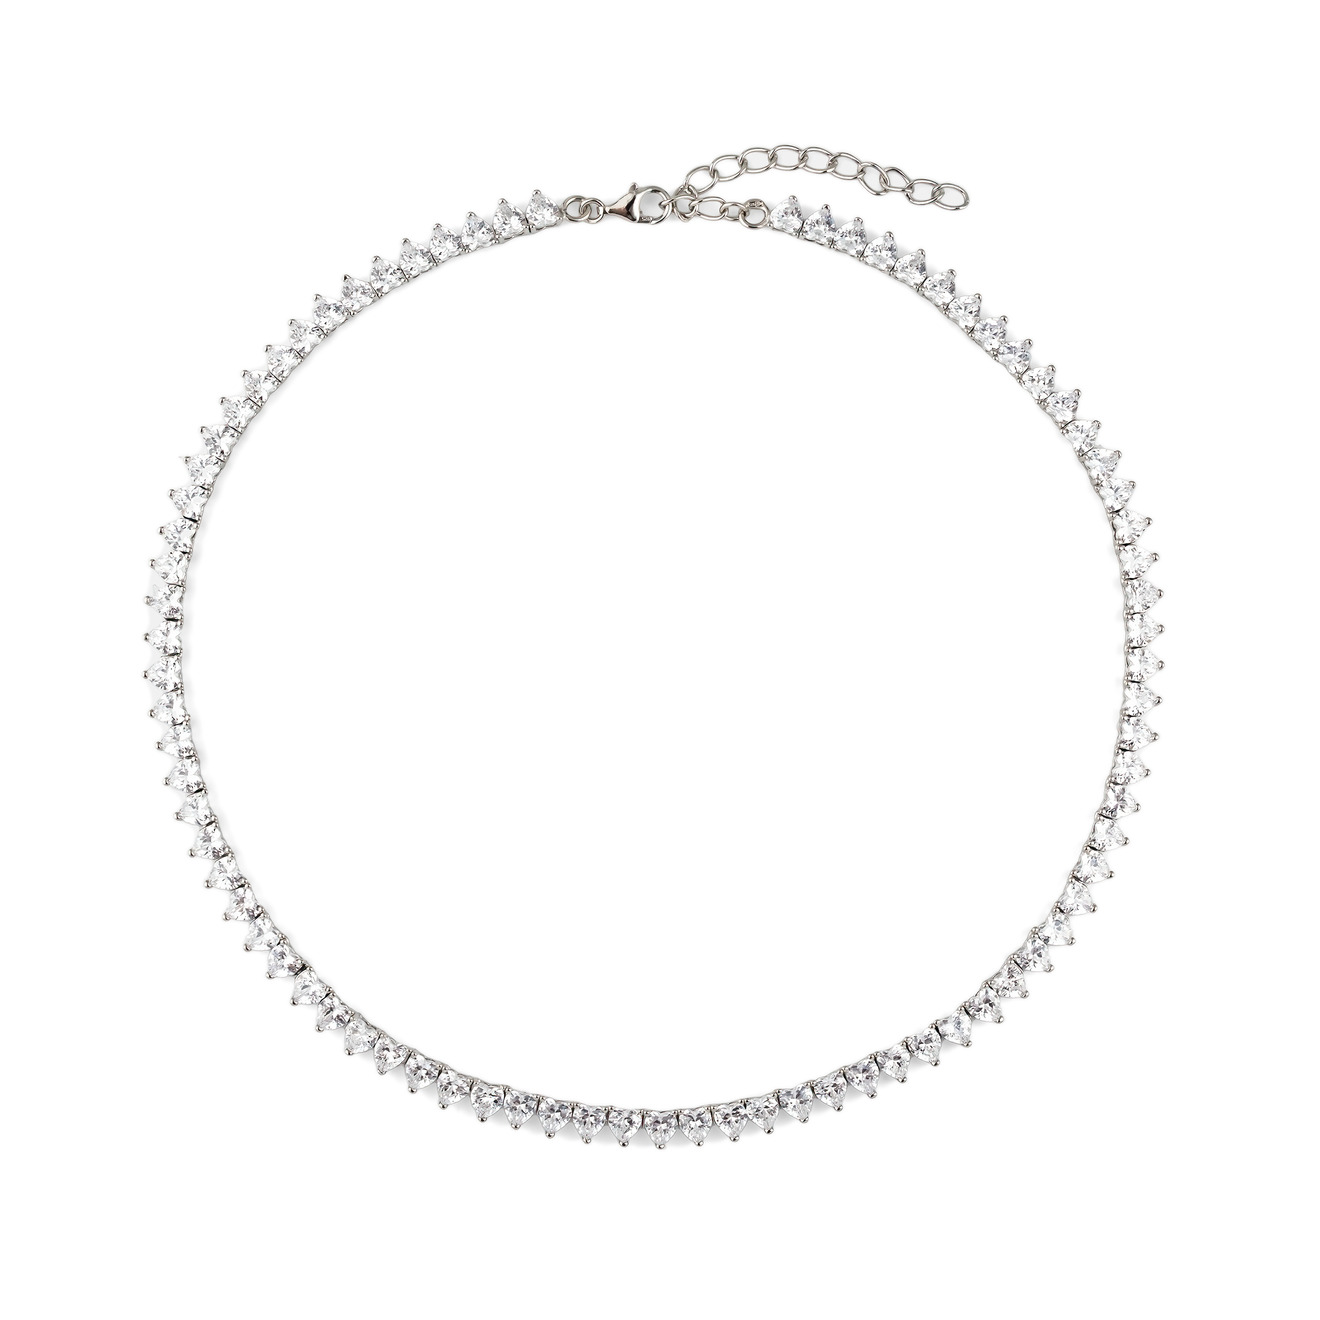 Holy Silver Колье из серебра с кристаллами в форме сердец holy silver крупная позолоченная цепь из серебра с белыми кристаллами